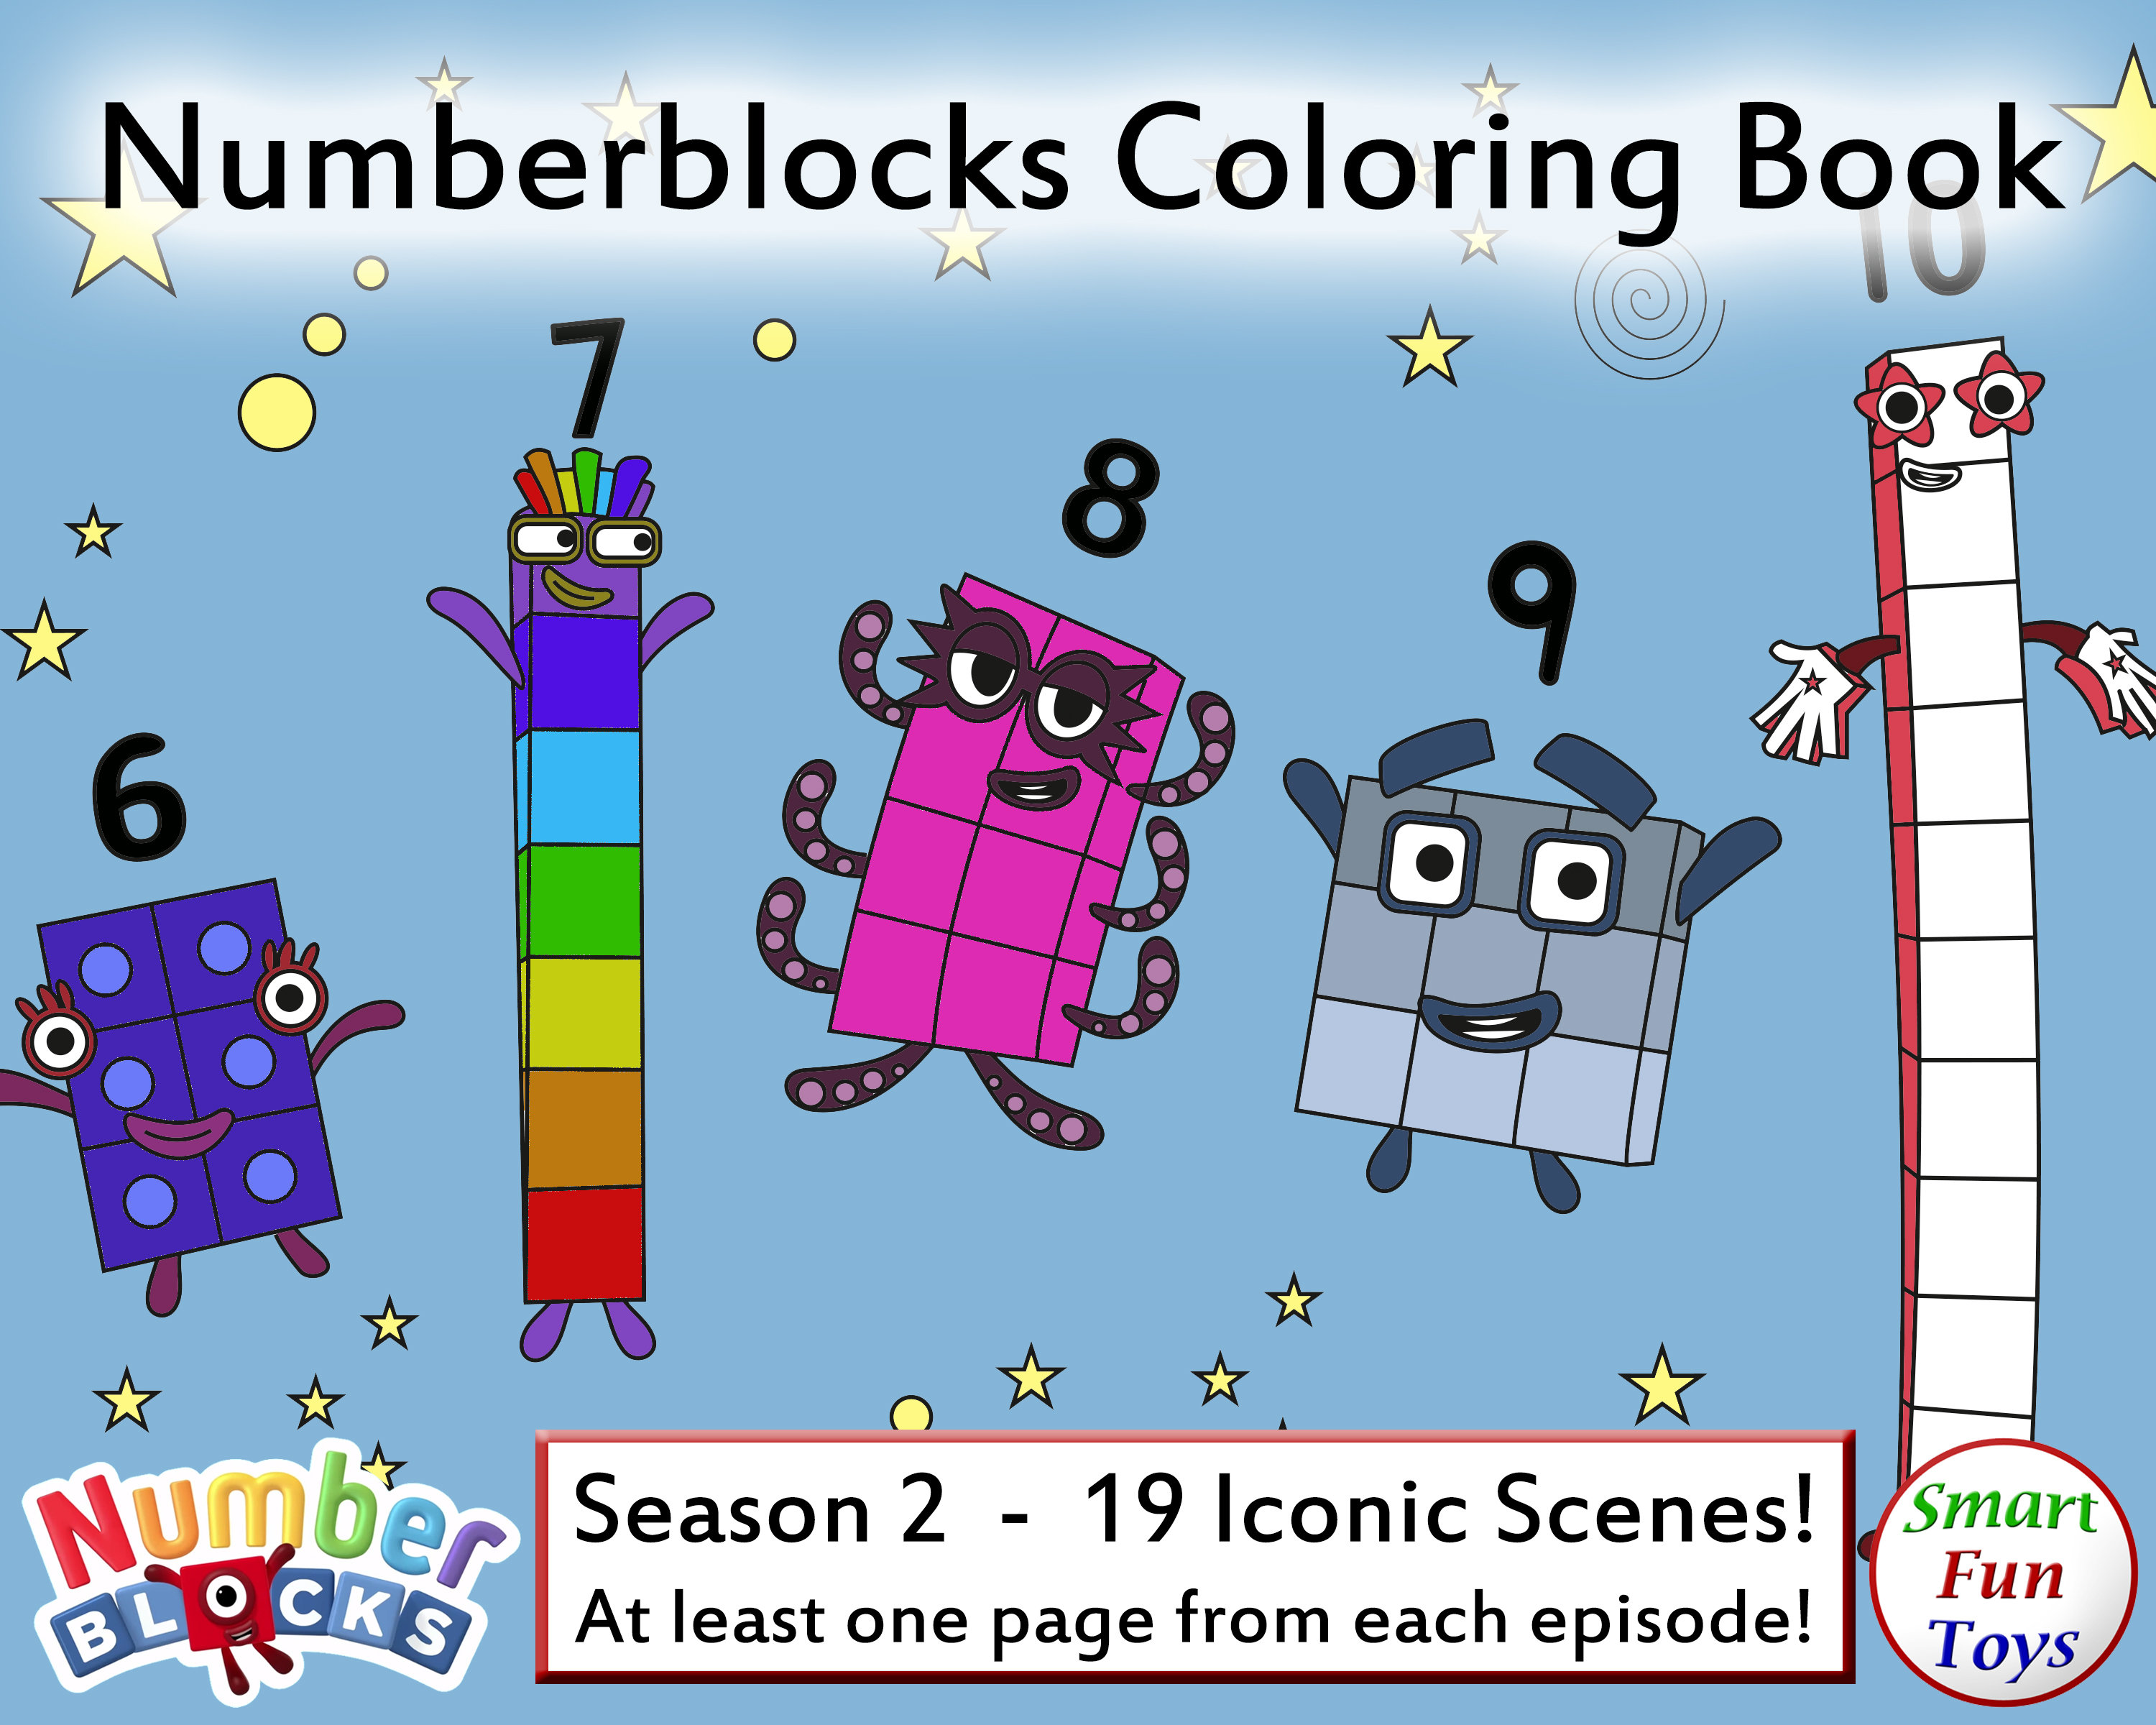 Numberblocks coloring book season